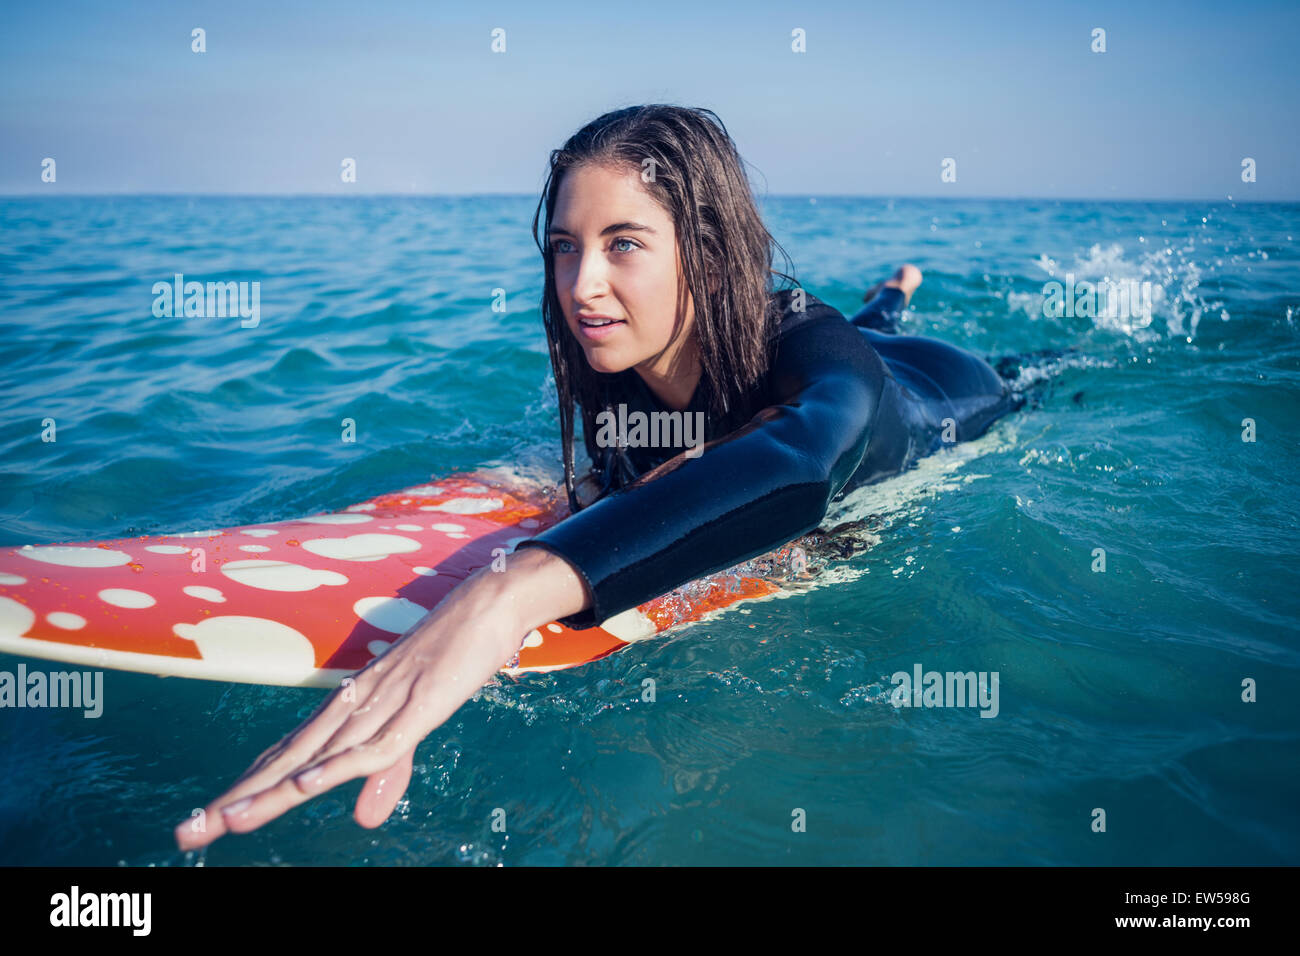 Frau im Neoprenanzug mit einem Surfbrett an einem sonnigen Tag Stockfoto